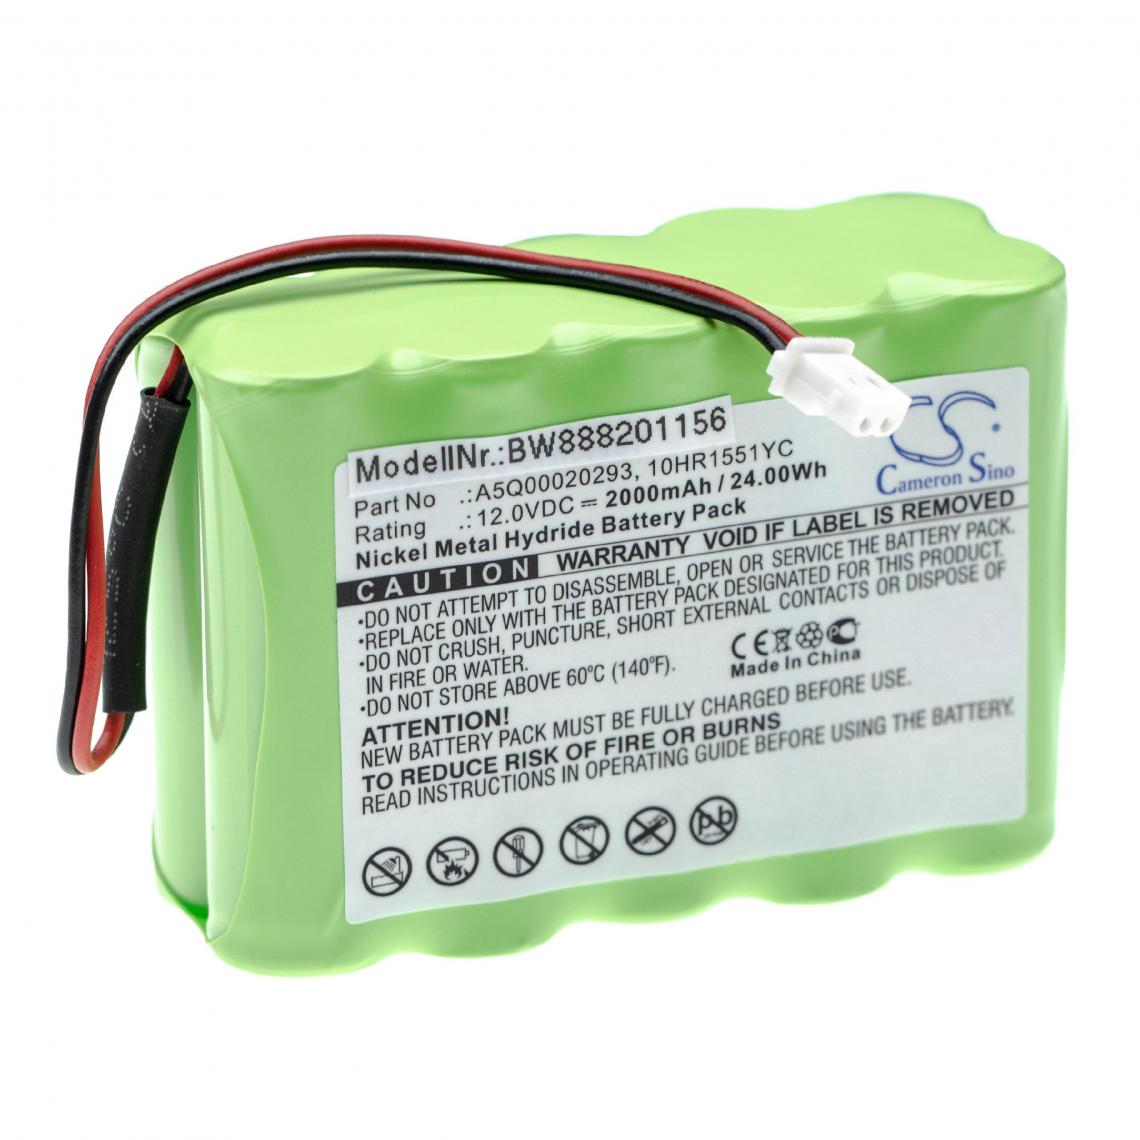 Vhbw - vhbw batterie compatible avec Siemens IC60, Sintony IC60-W-10 alarme maison/contrôle home security (2000mAh, 12V, NiMH) - Autre appareil de mesure